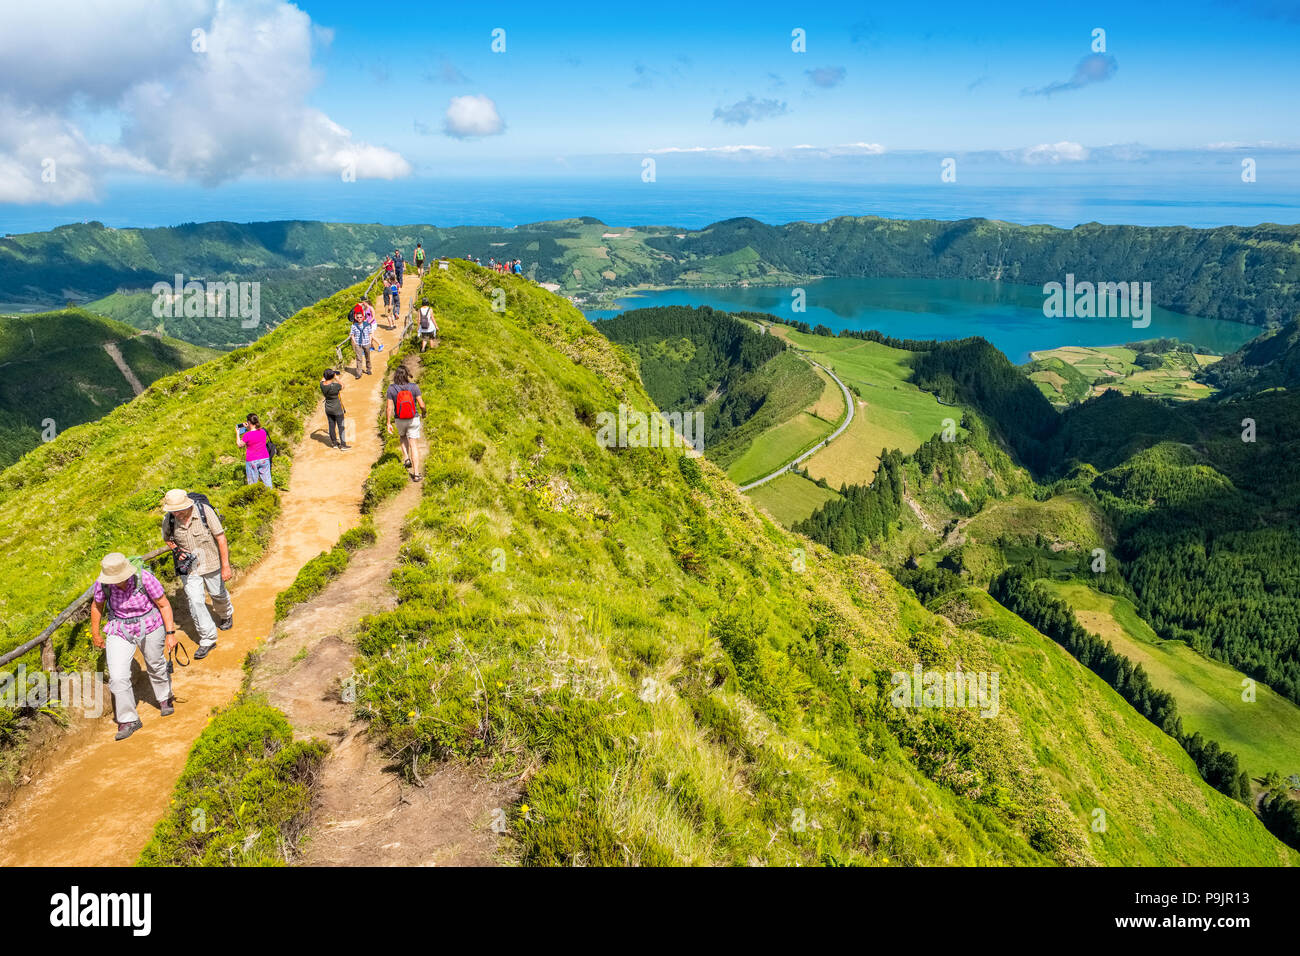 Los turistas en un mirador a través de Sete Cidades, dos lagos y una aldea en el cráter de un volcán inactivo en la isla de Sao Miguel, Azores Foto de stock